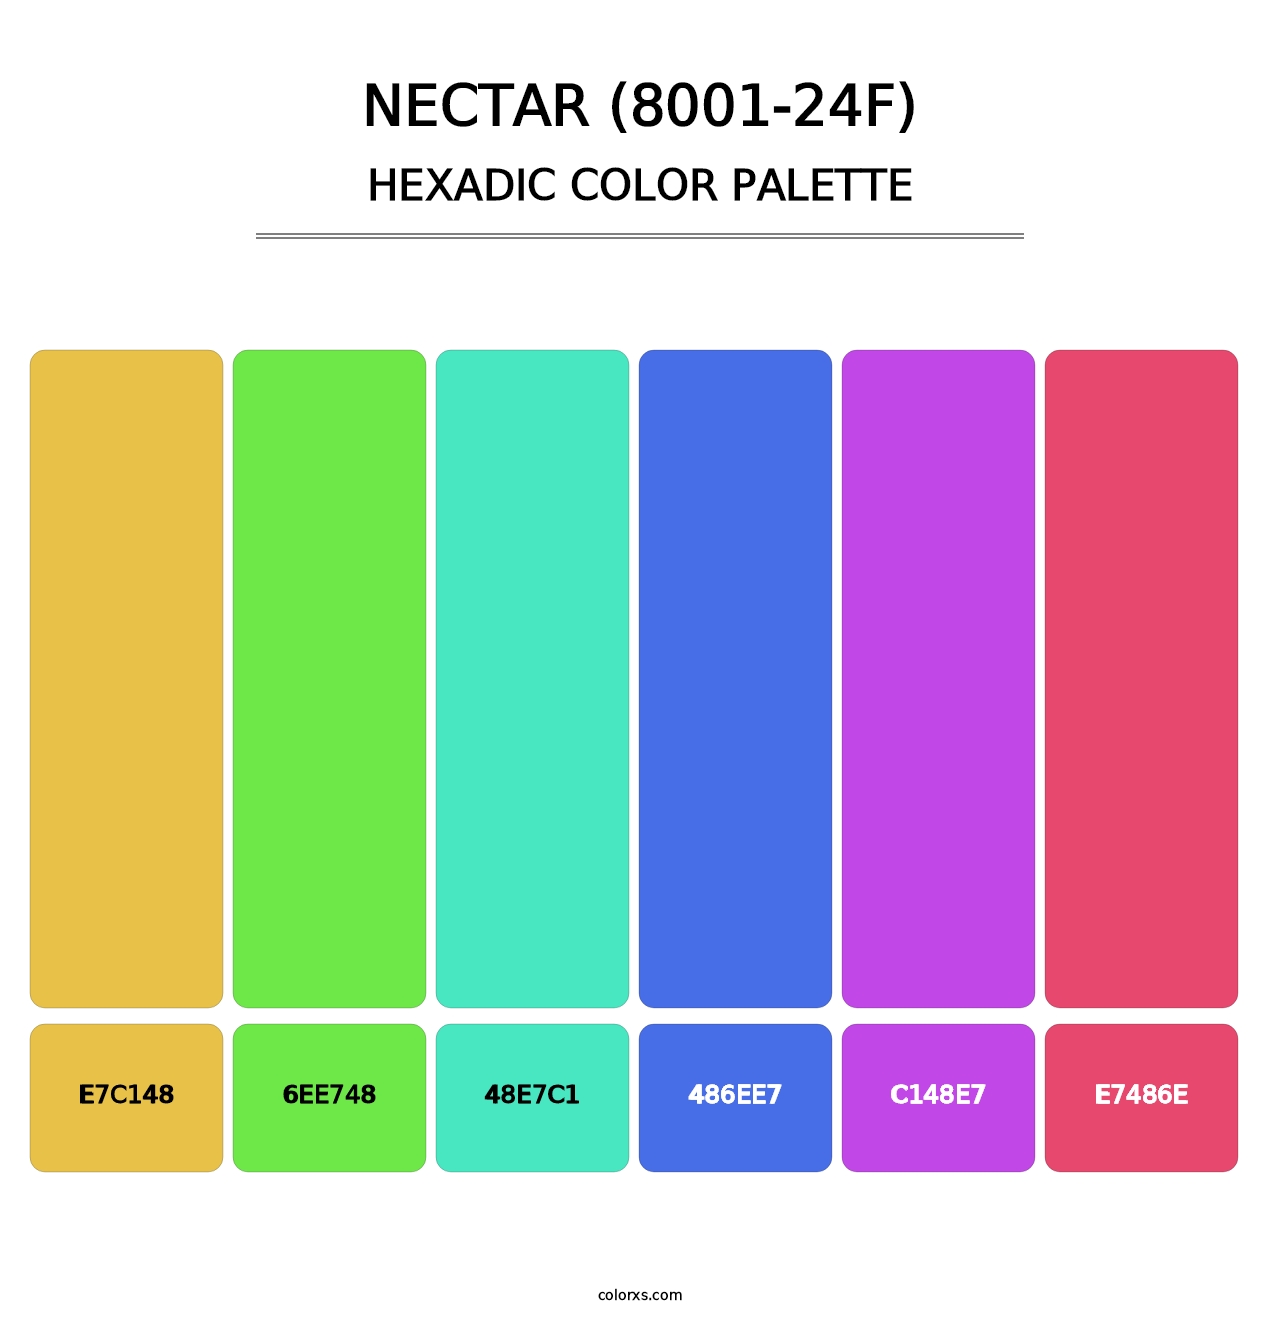 Nectar (8001-24F) - Hexadic Color Palette